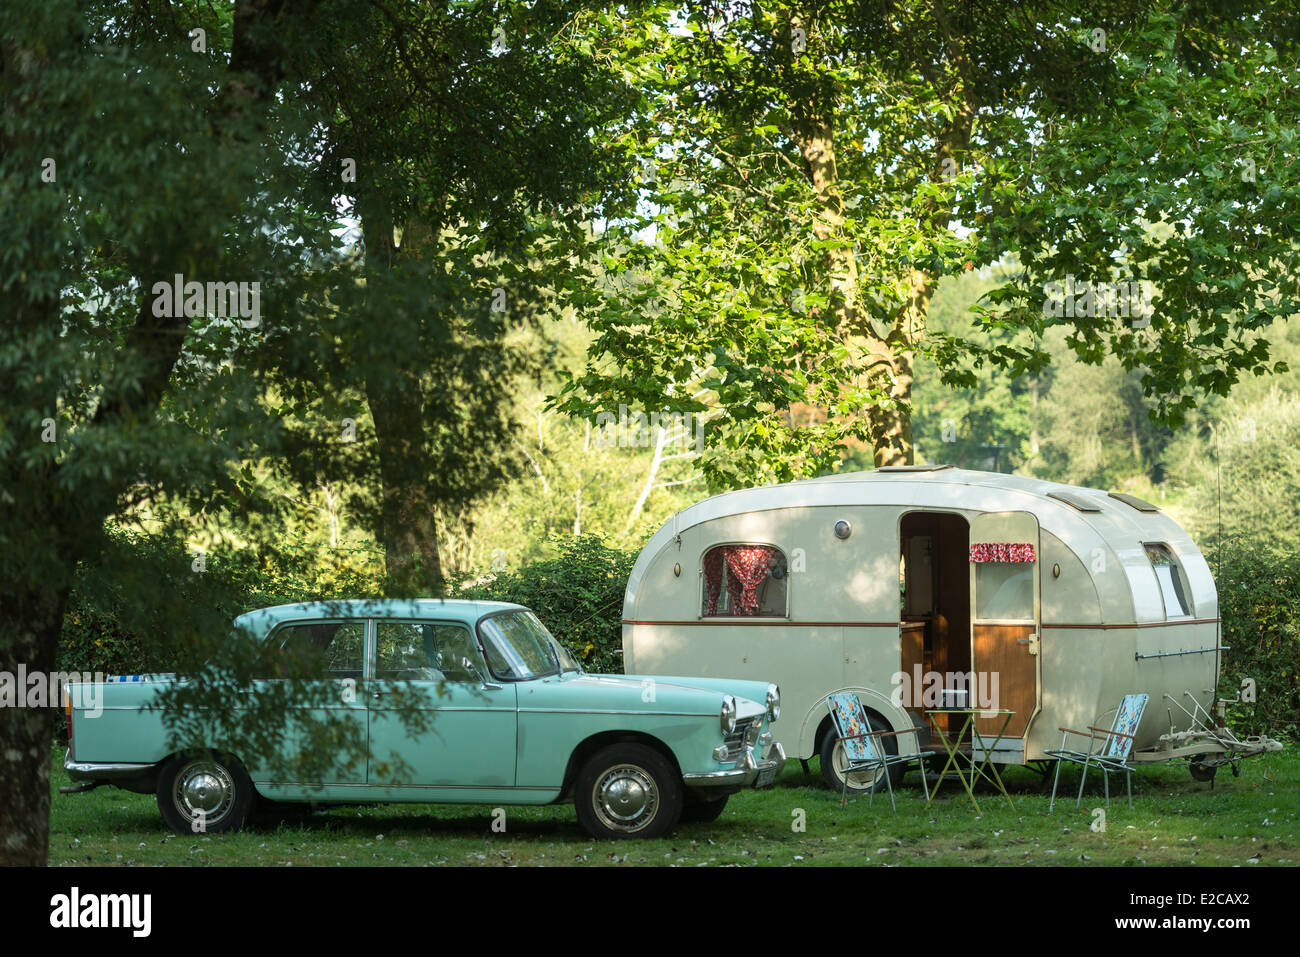 France, Morbihan, le Roc Saint André, vieille caravane Sologne de 1960 dans le domaine du Roc, camping, hébergements insolites Banque D'Images